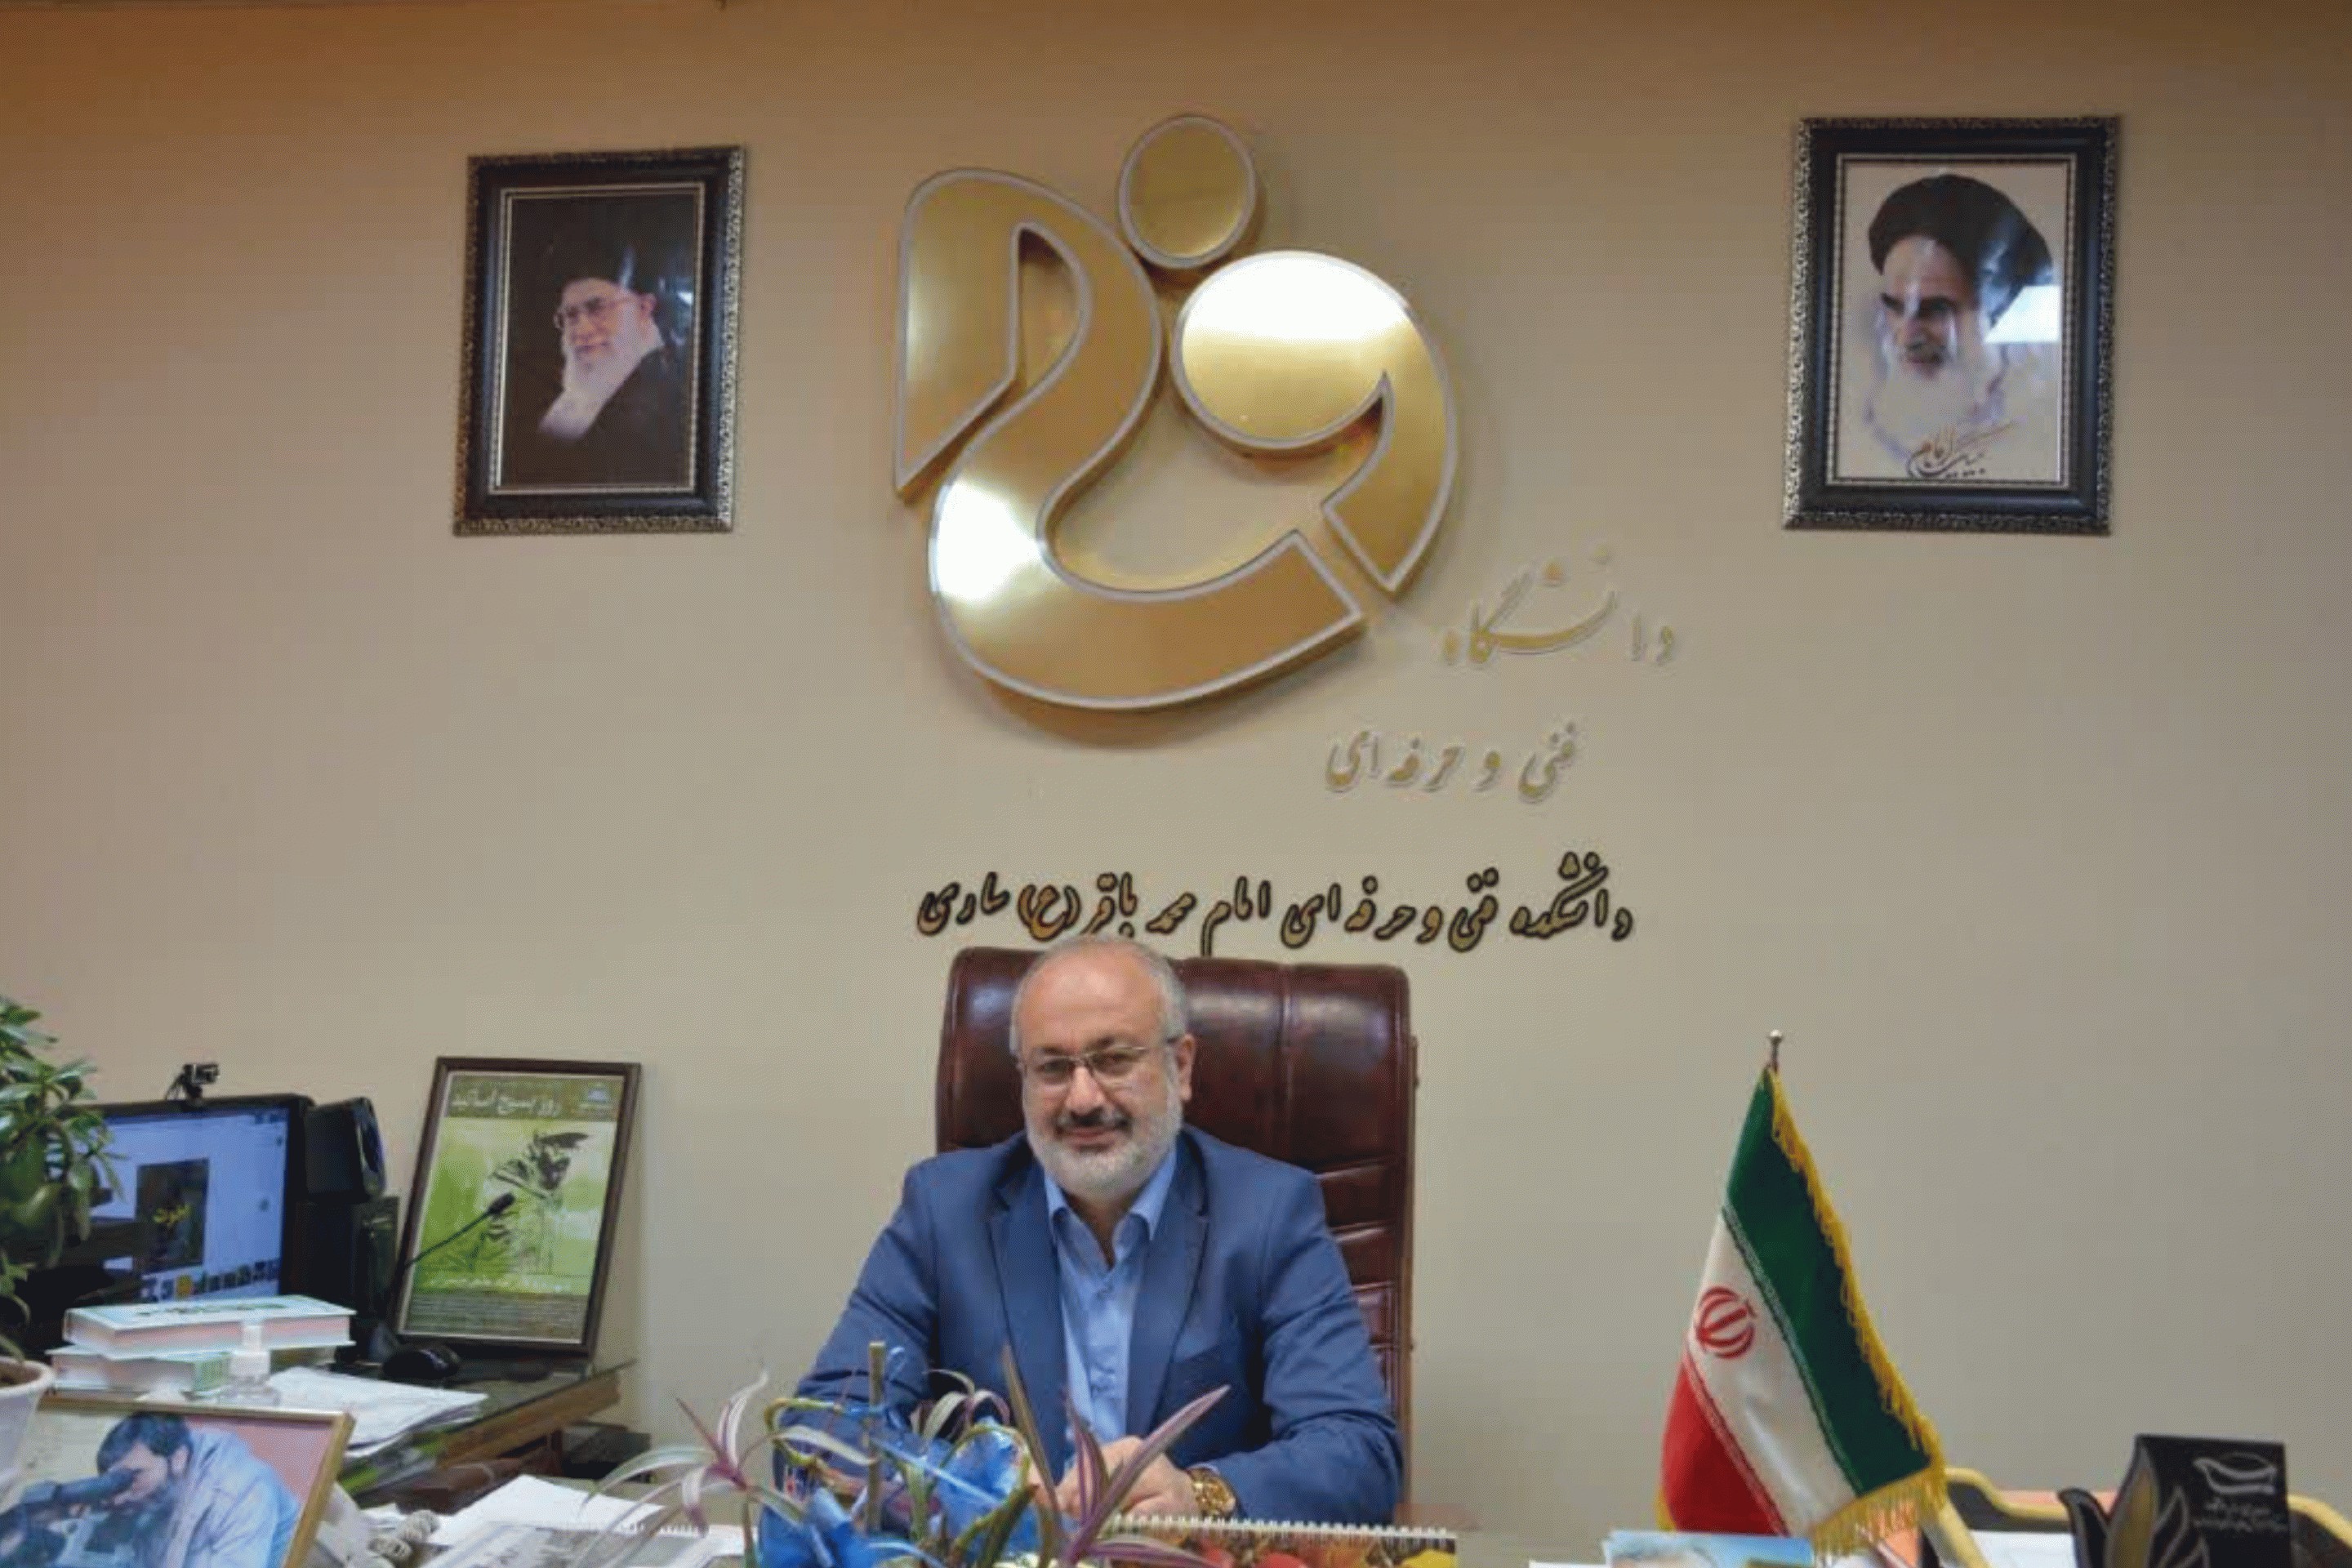 دکتر هاشمی سرپرست دانشگاه فنی و حرفه ای واحد استان مازندران به مناسبت ۱۲ فروردین، روز "جمهوری اسلامی" پیامی صادر کرد.